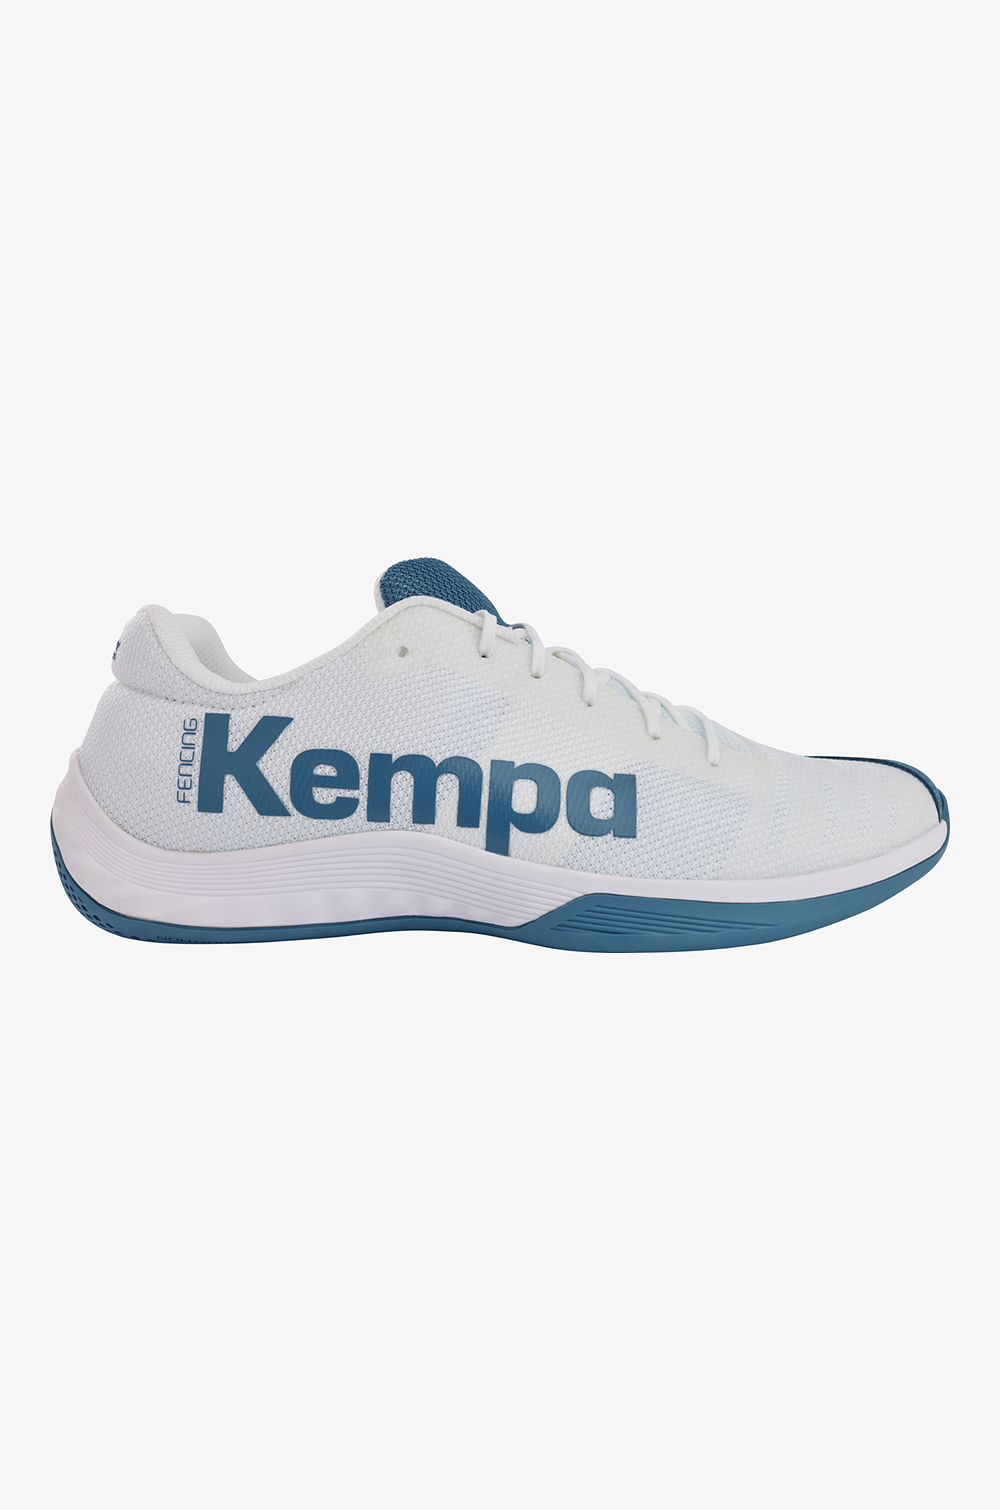 Kempa Shoes Attack